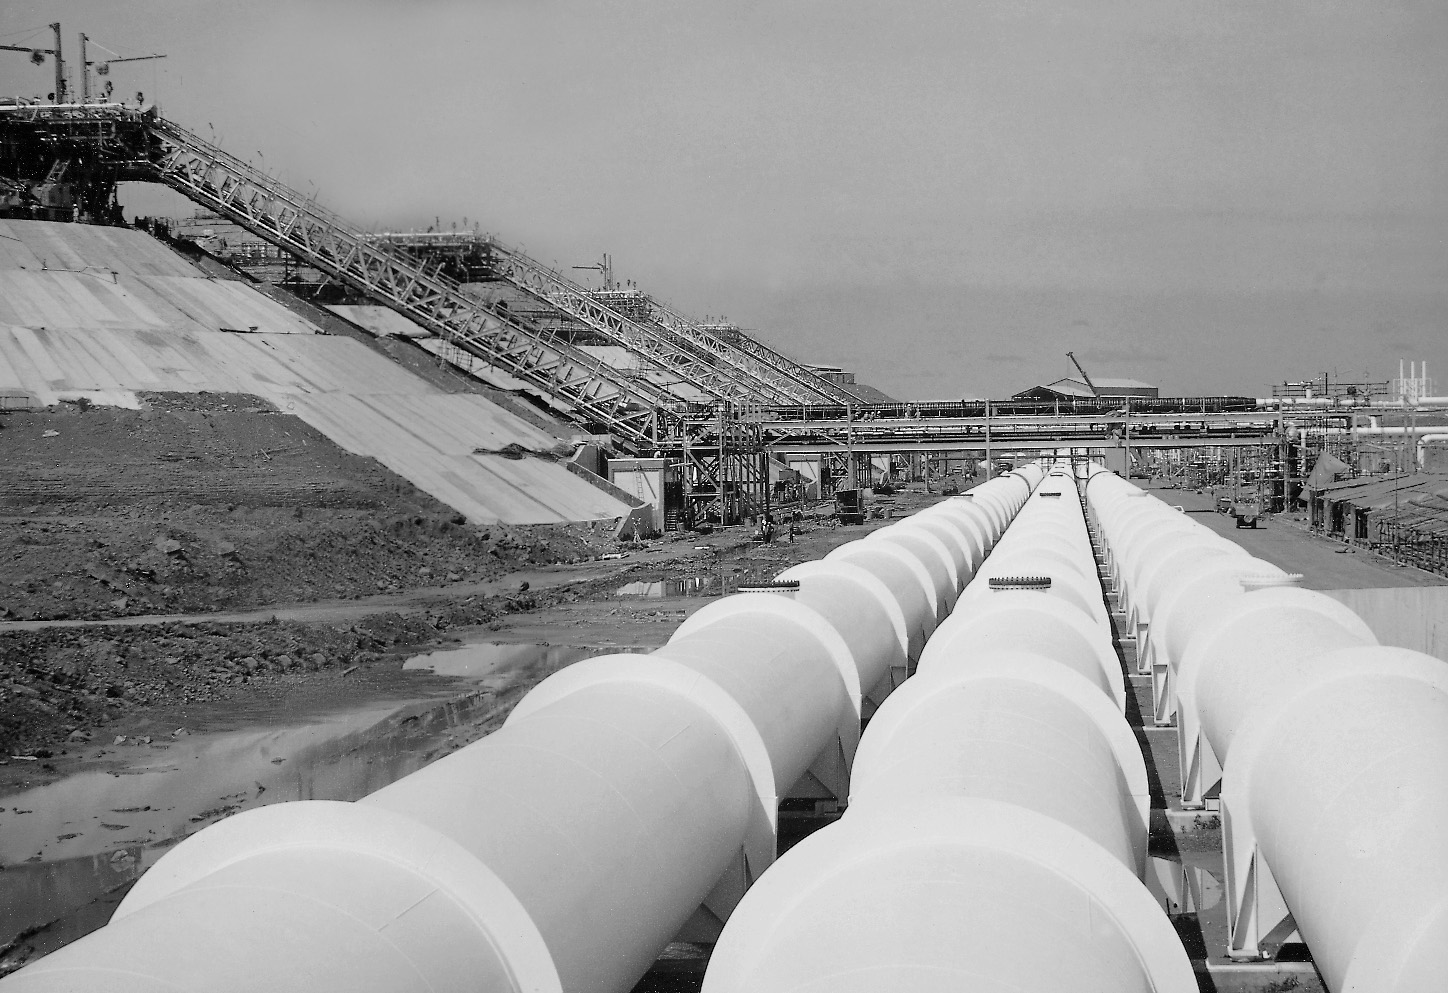 발주처: MALAYSIA LNG SDN BHD / 공사기업:  디엘이앤씨(주) / 공사기간:  1979/09/28 ~ 1984/09/20 / 계약금액: 326,456천미불<br/>연산 600만t 규모의 생산 능력을 갖춘 천연가스액화공장(M-LNG) 건설 공사